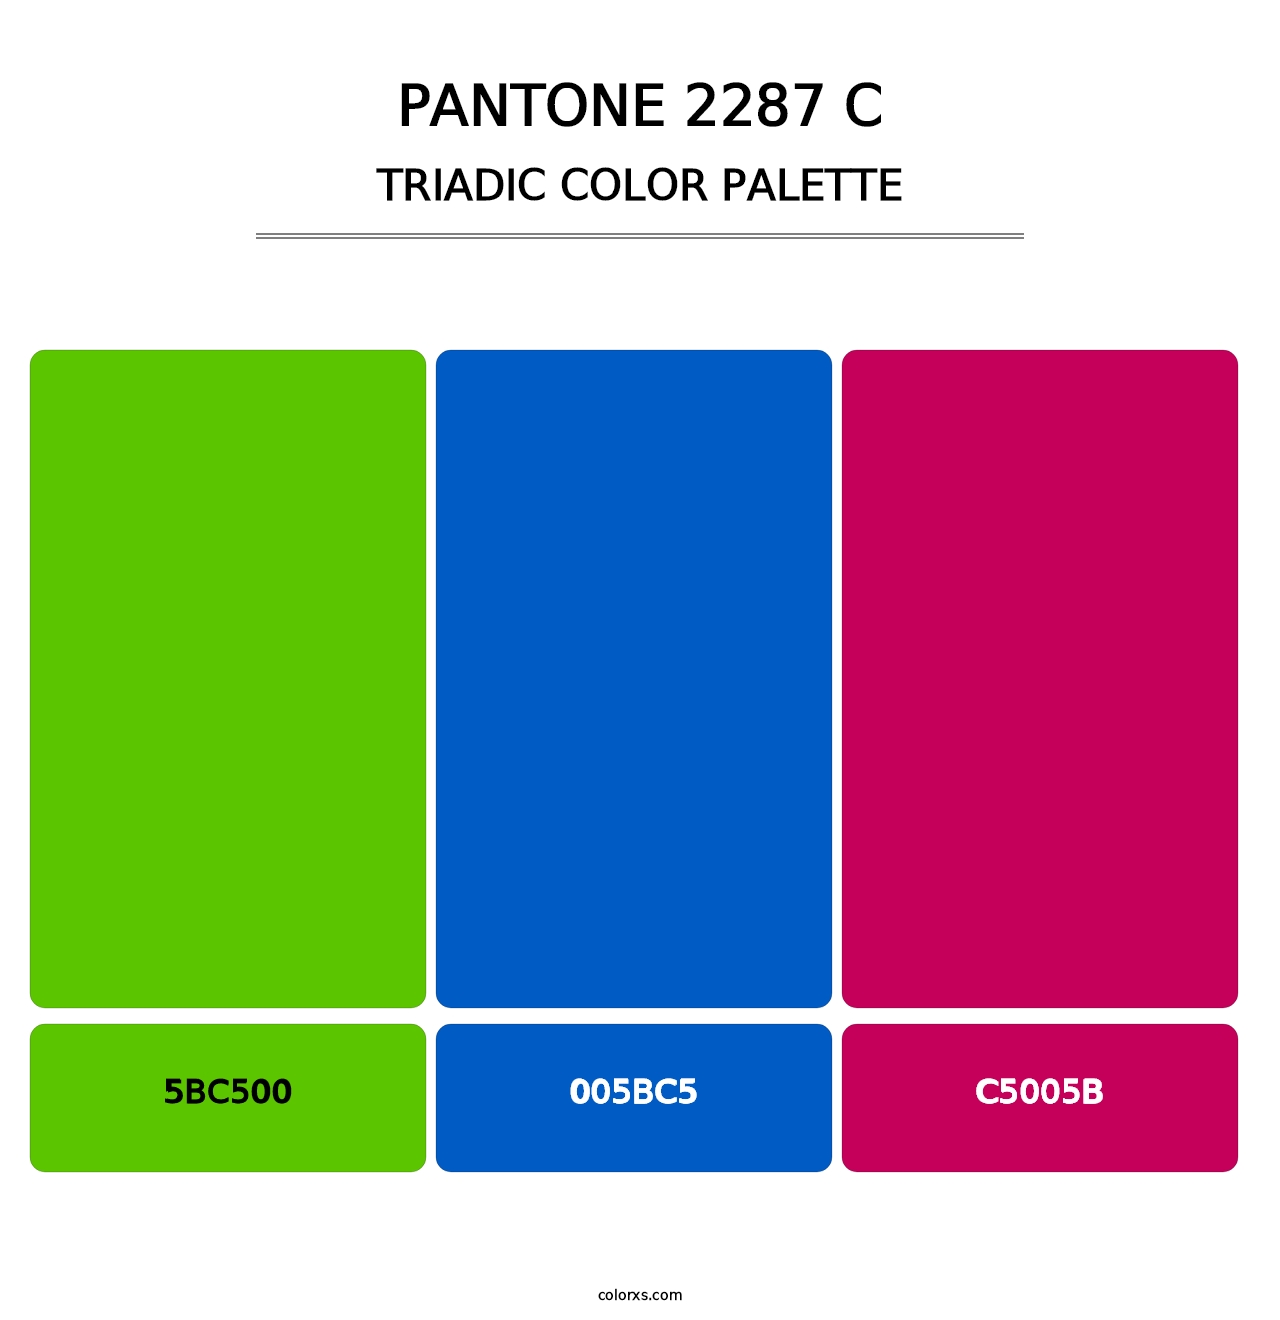 PANTONE 2287 C - Triadic Color Palette